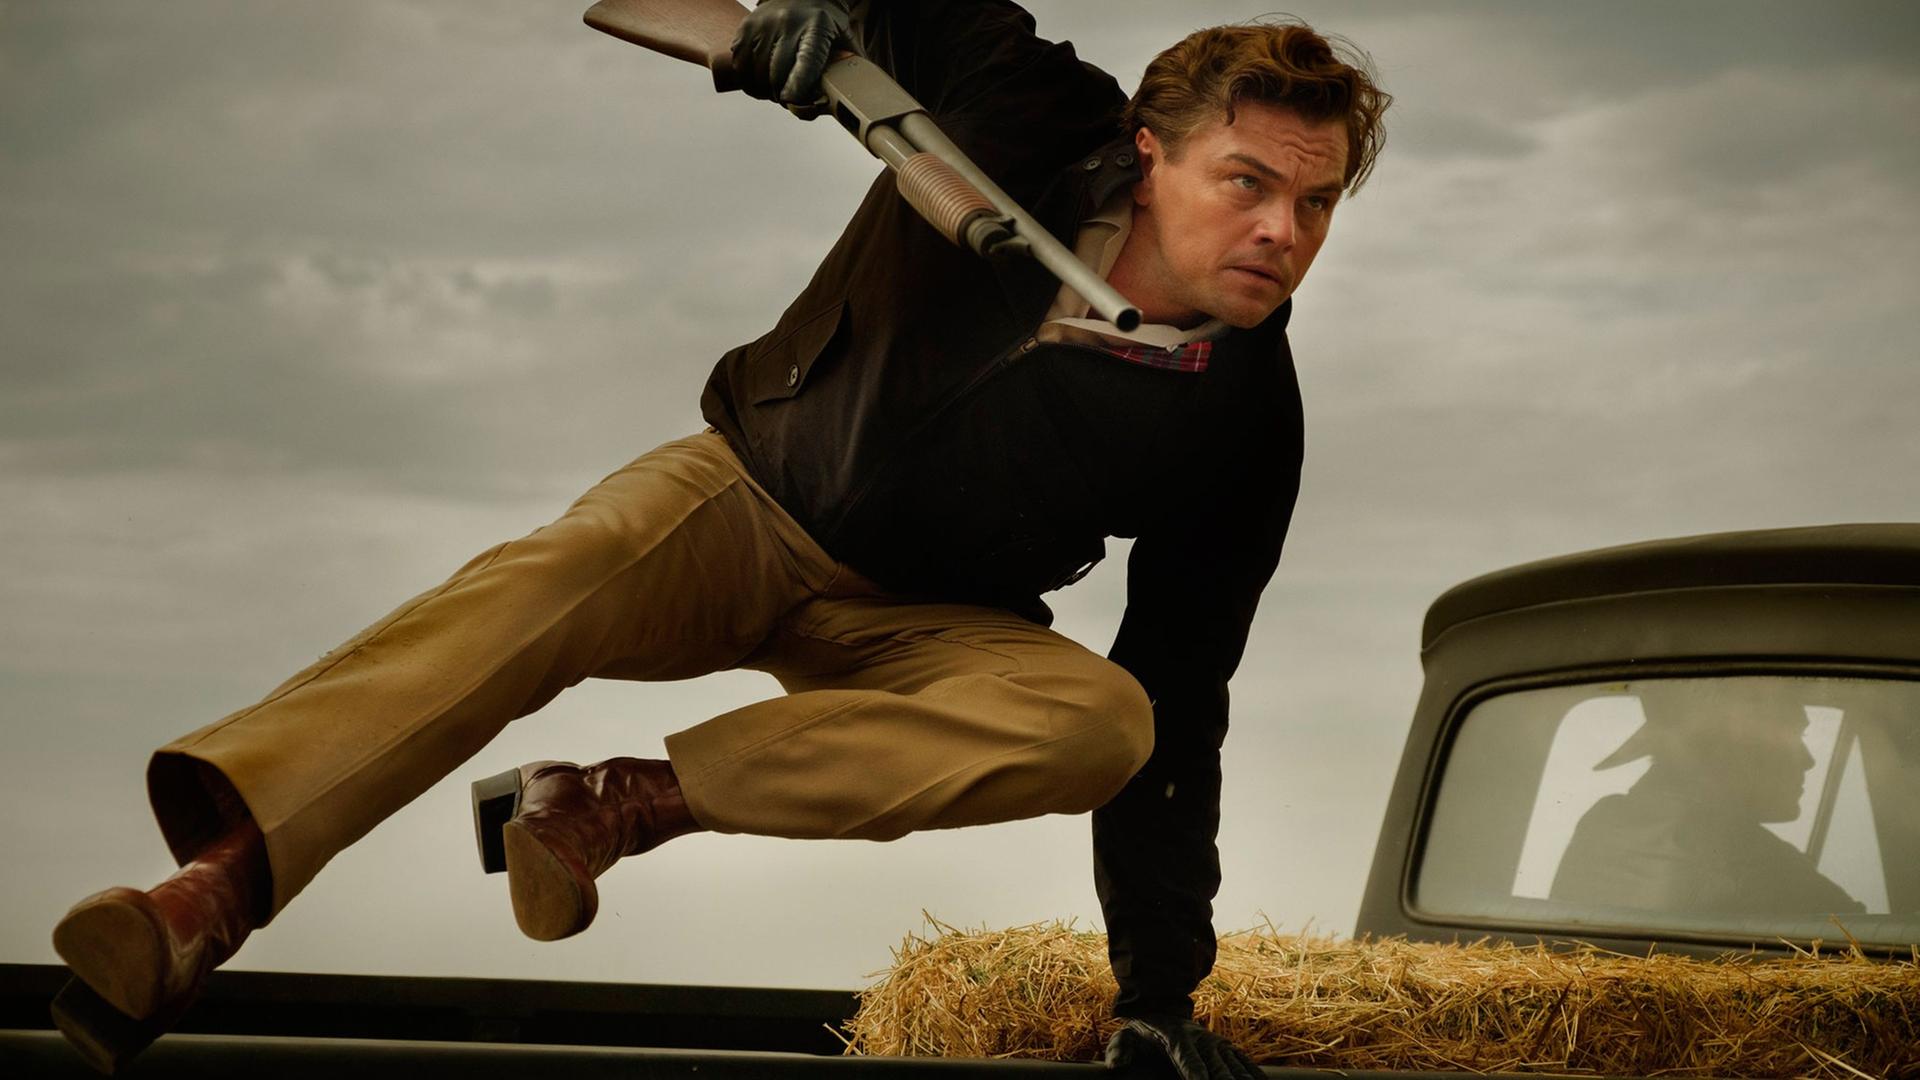 Das Bild zeigt den Schauspieler Leoonardo DiCaprio beim Sprung über ein Auto mit einem Gewehr in der Hand.